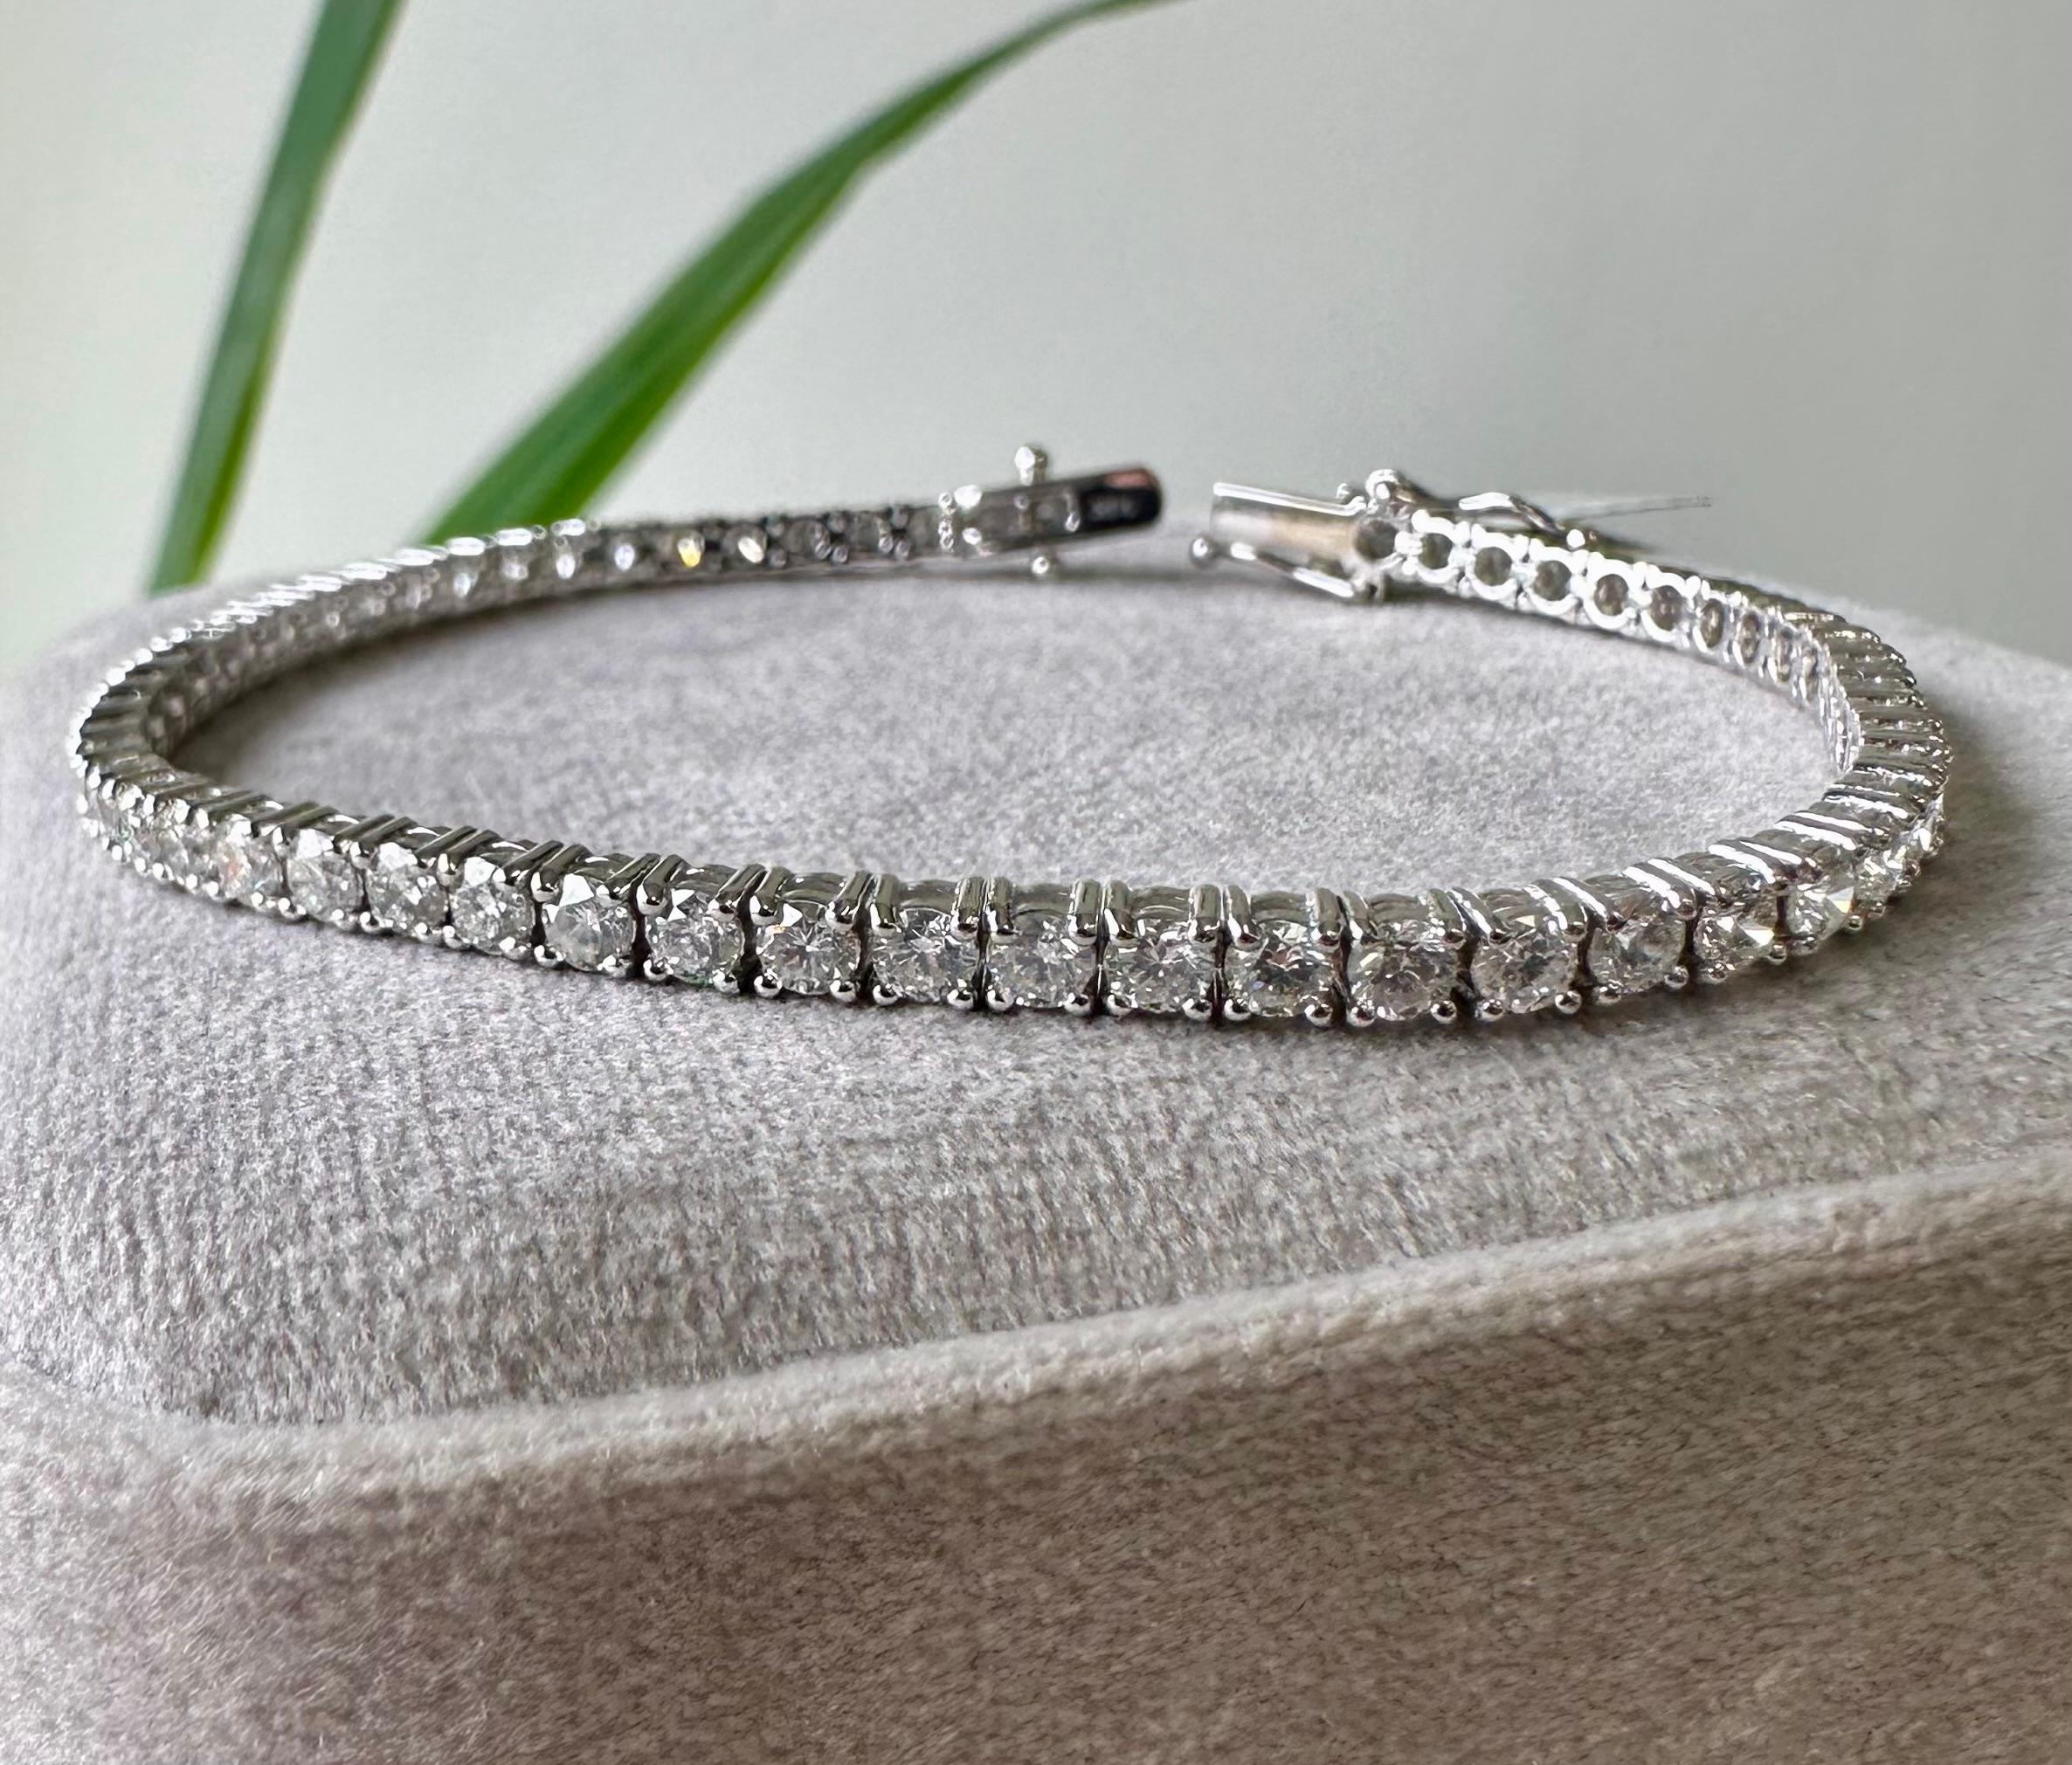 Taille idéale pour une utilisation quotidienne.
Ce bracelet de tennis contient 5 carats de diamants naturels G-H VS.
7